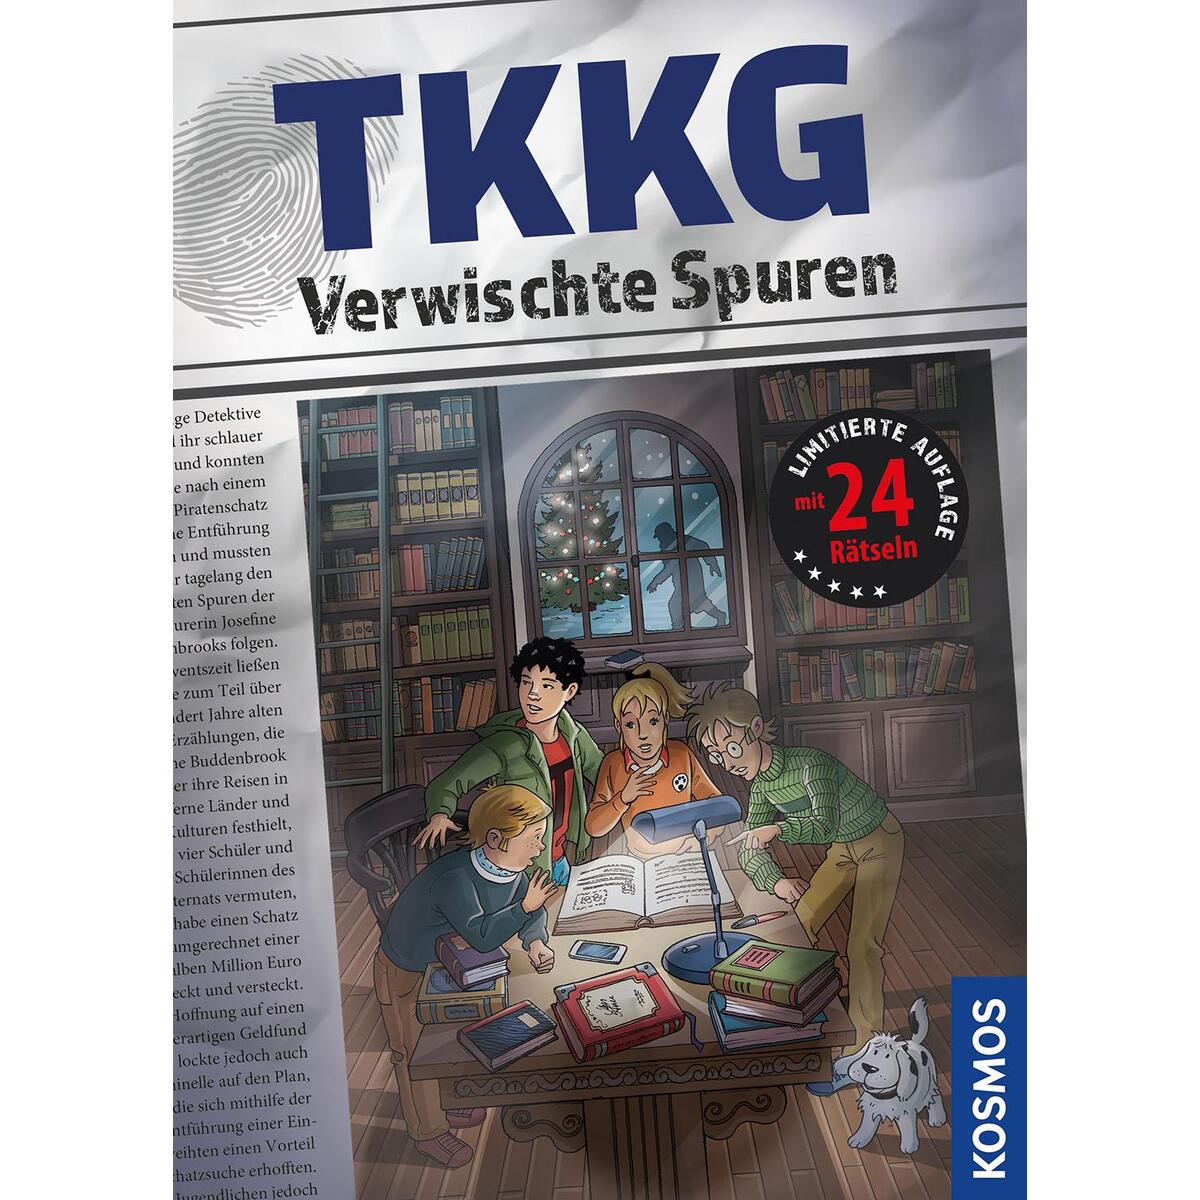 TKKG, Verwischte Spuren von Franckh-Kosmos